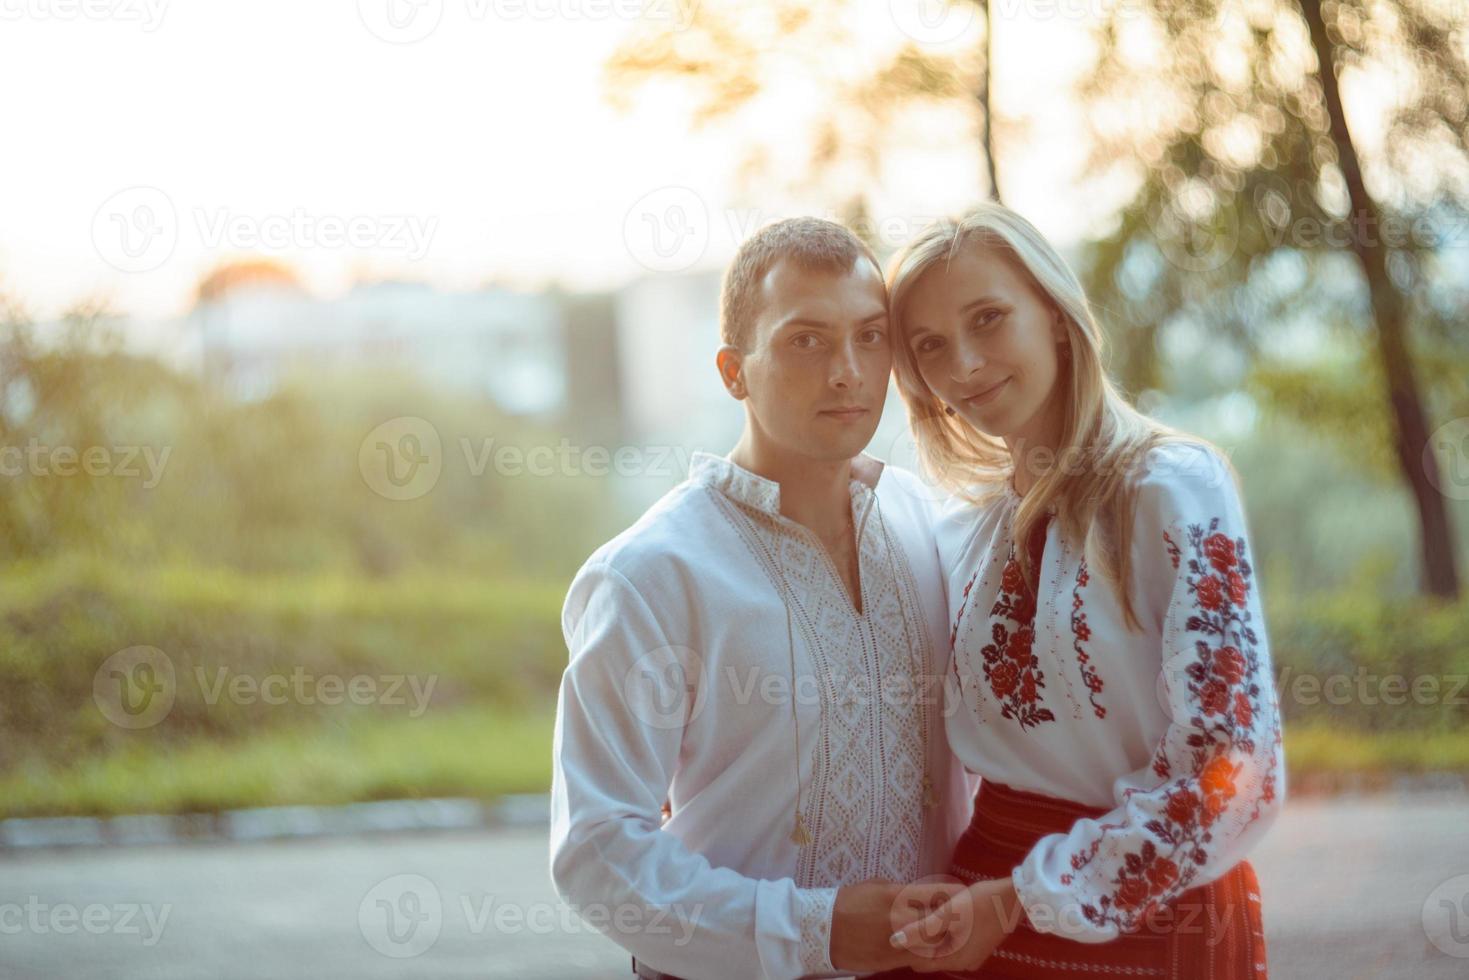 jovem casal romântico em roupas nacionais da ucrânia foto